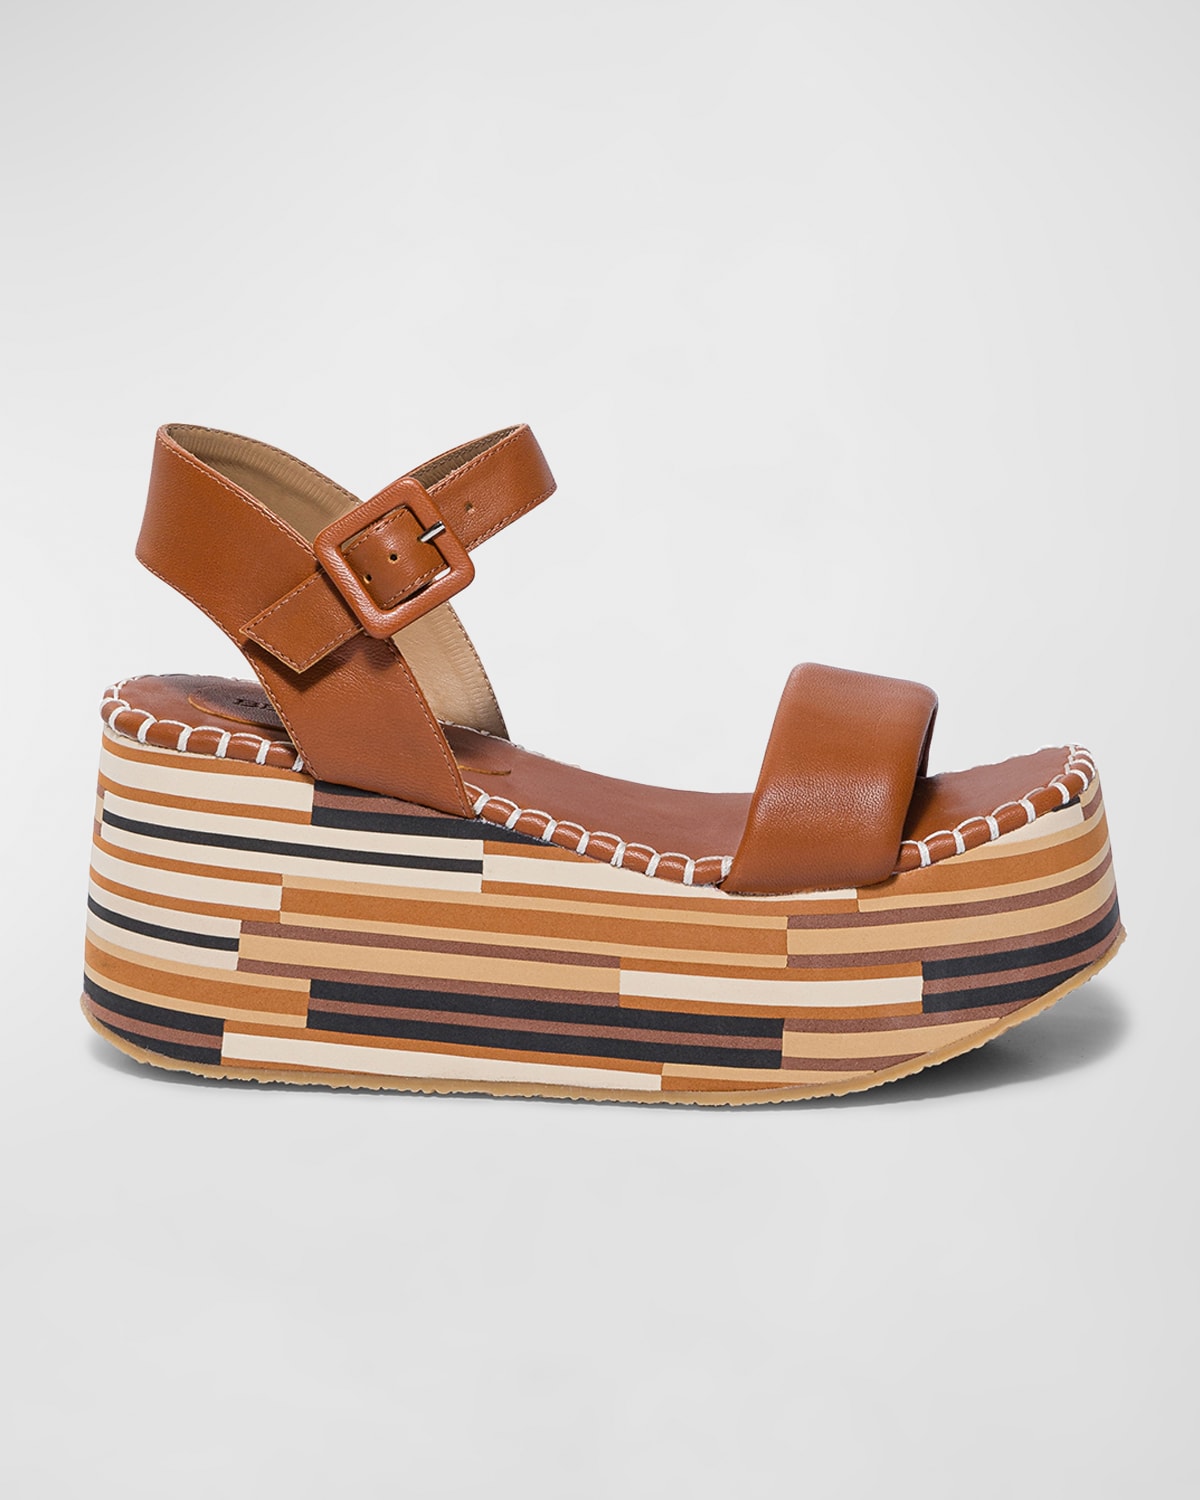 Leather Ankle-Strap Wedge Platform Sandals